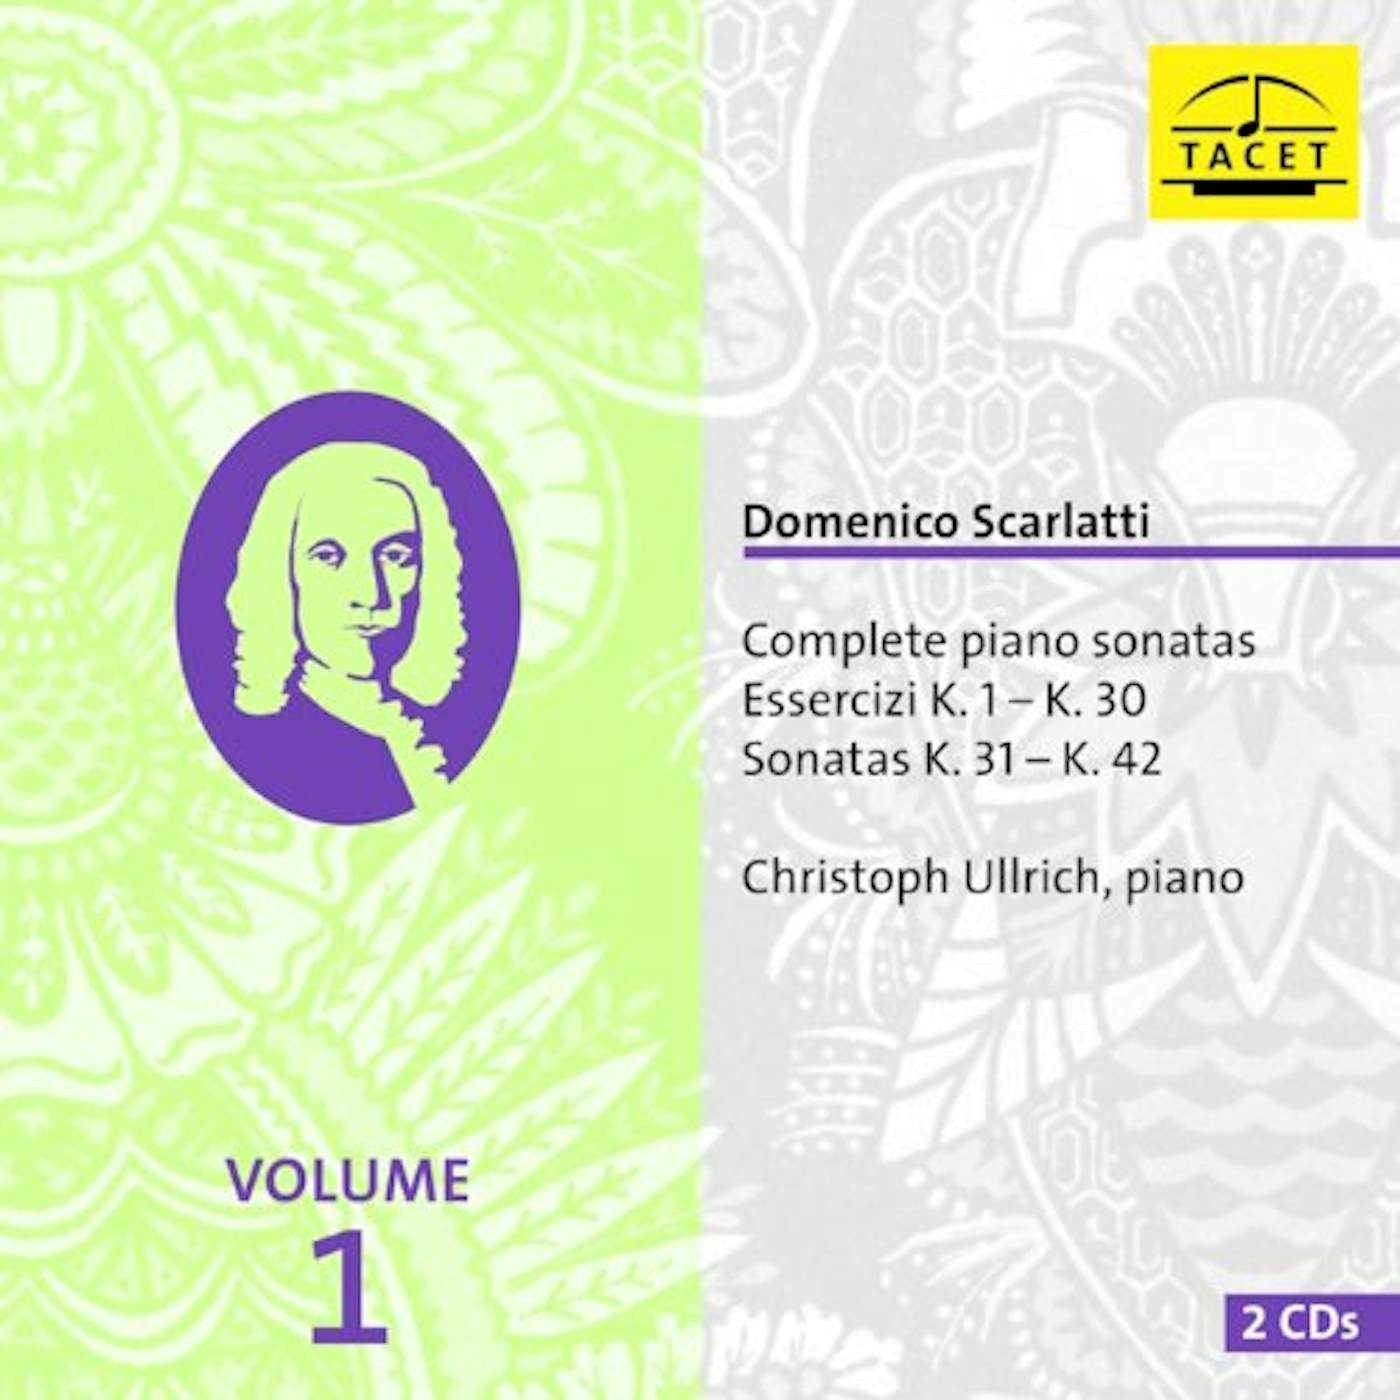 Scarlatti COMP PIANO SONATAS CD